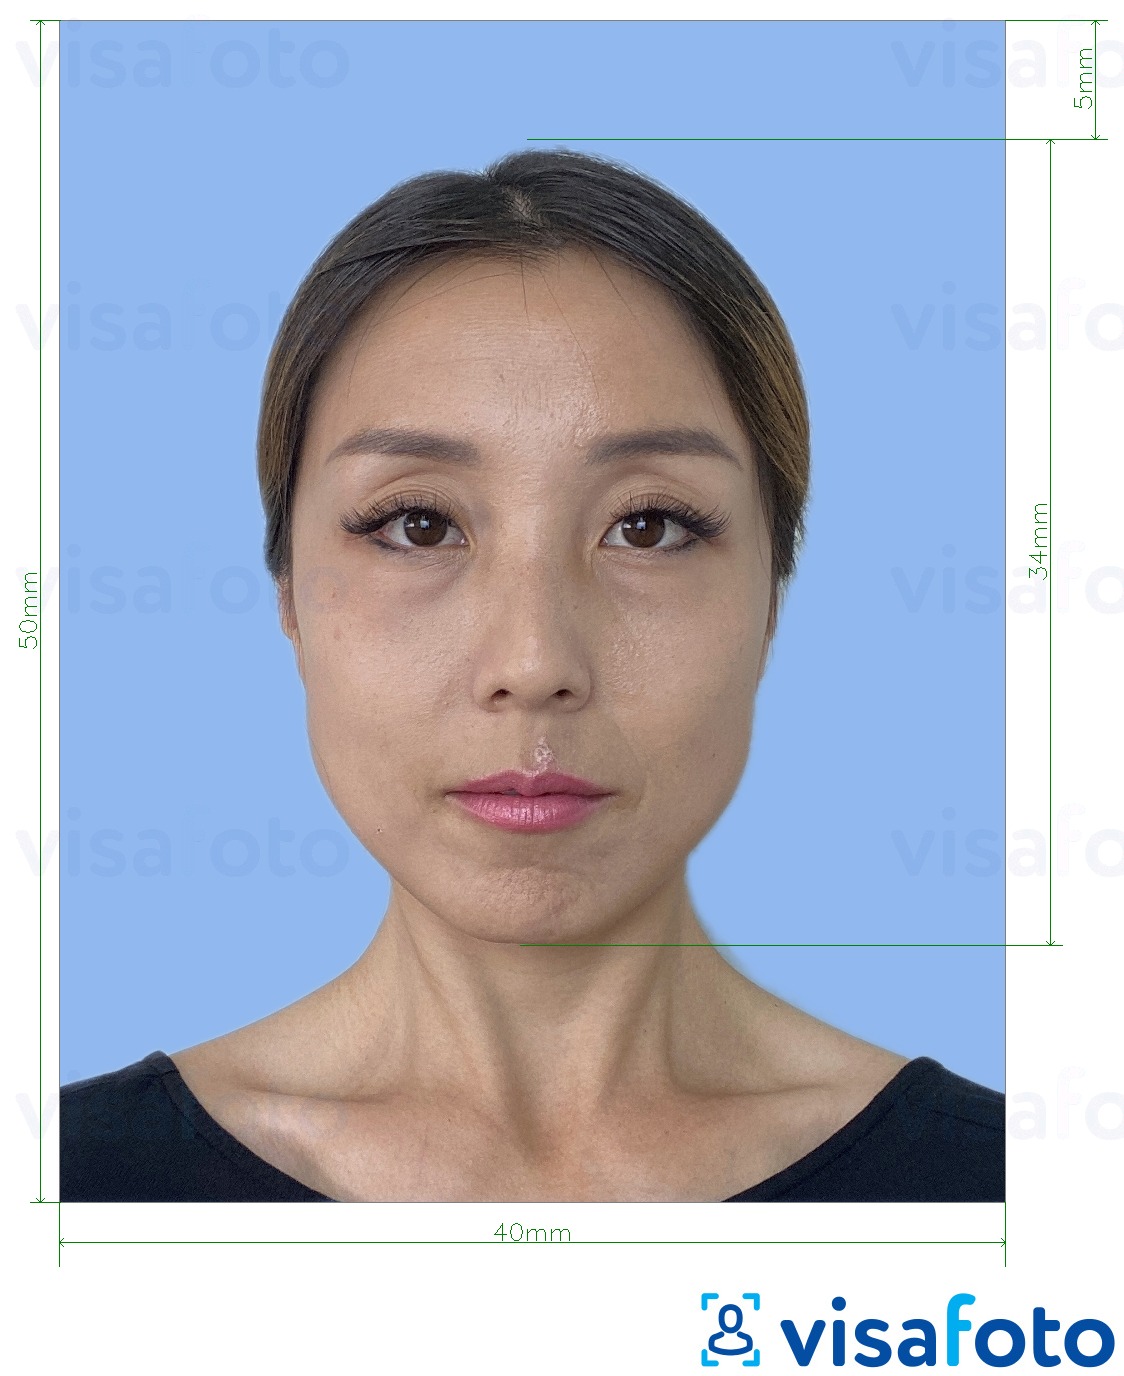 Ejemplo de foto para Licencia de conducir extranjera de Japón 4x5 cm con la especificación del tamaño exacto